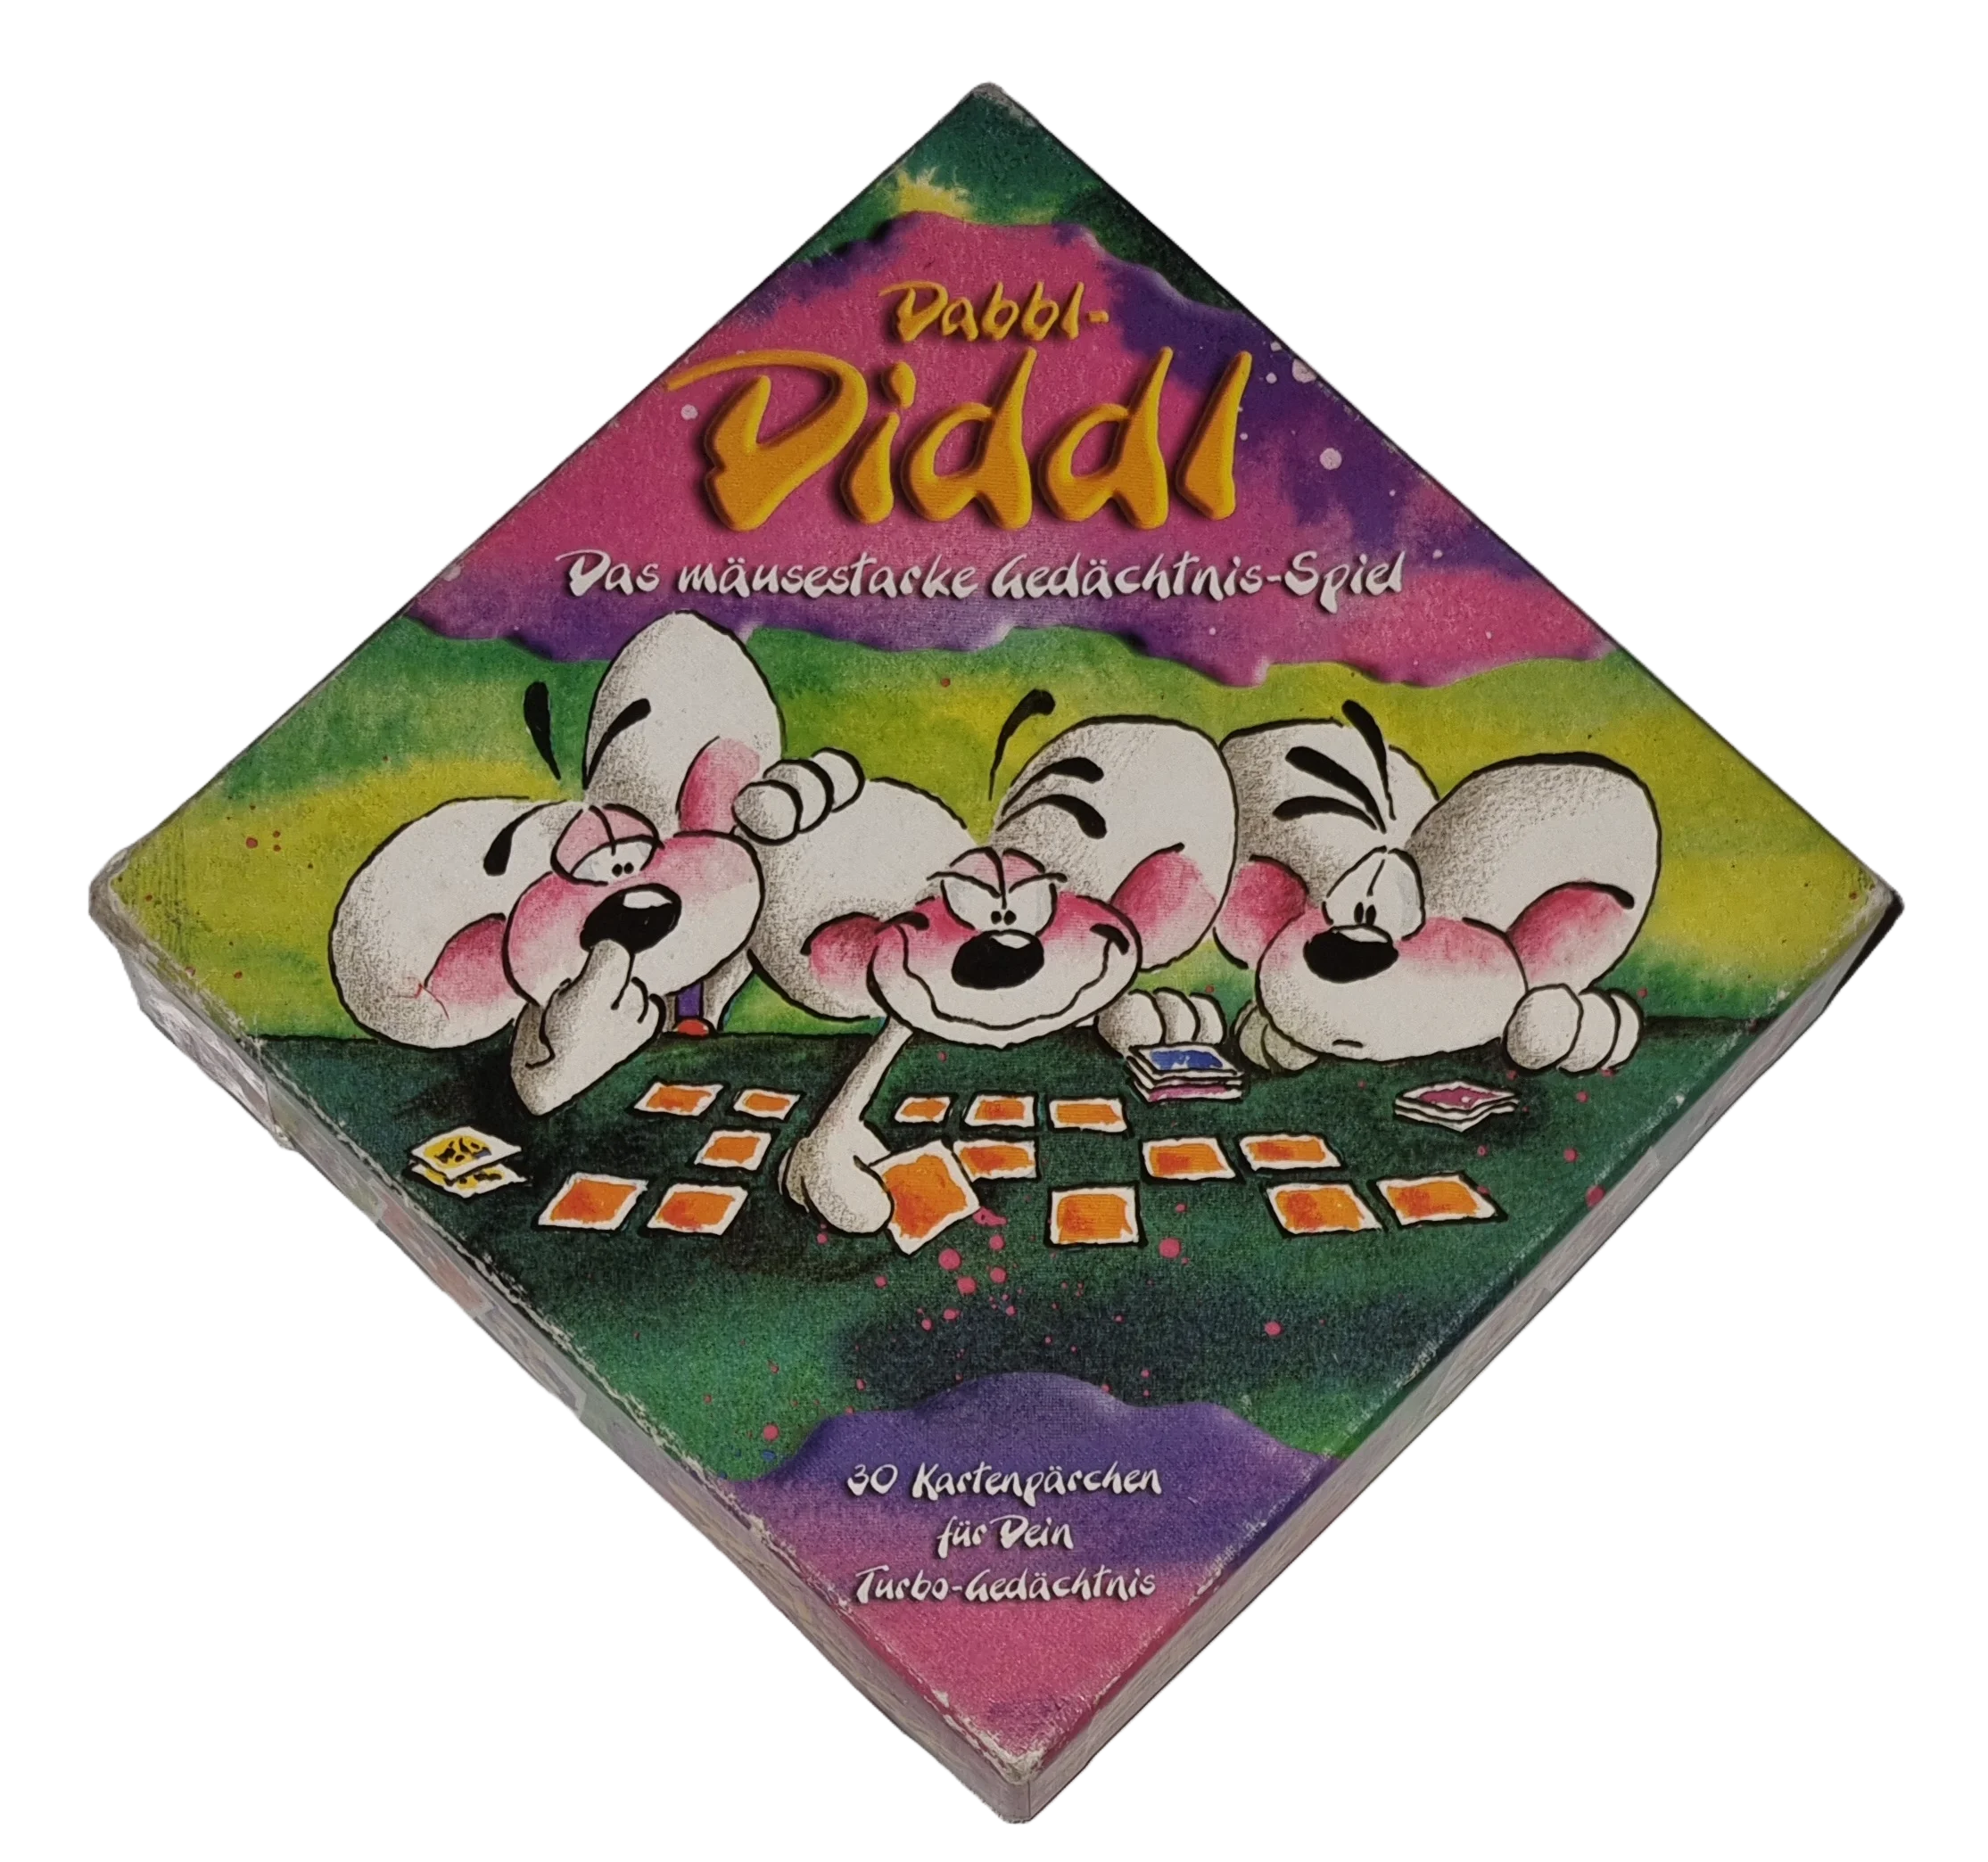 Daddl-Diddl Das mäusestarke Gedächtnis-Spiel